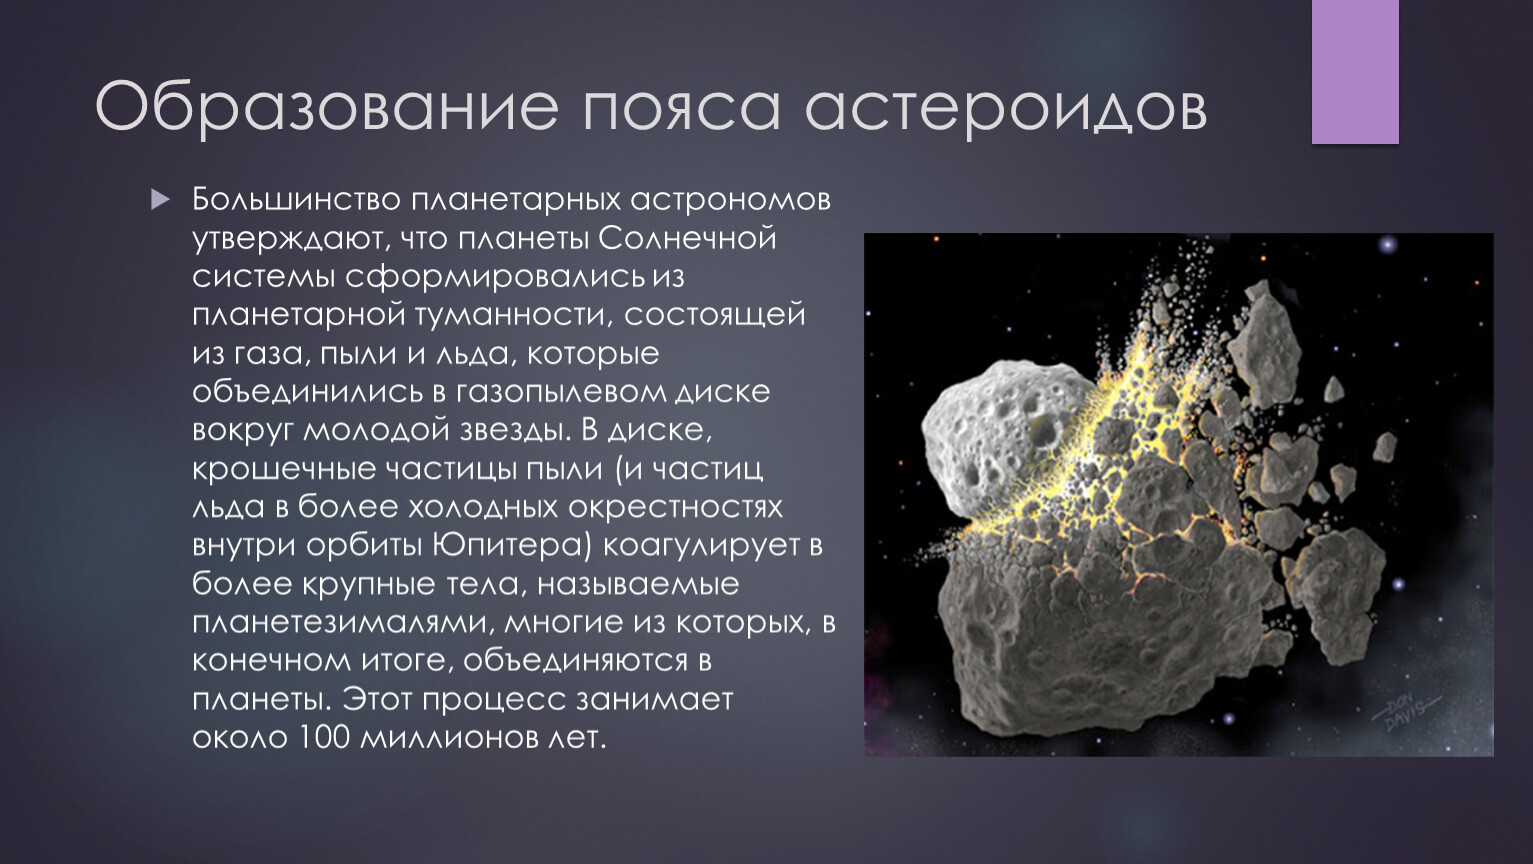 Название группы астероидов. Образование астероидов. Образование пояса астероидов. Гипотезы возникновения пояса астероидов. Причины возникновения астероидов.